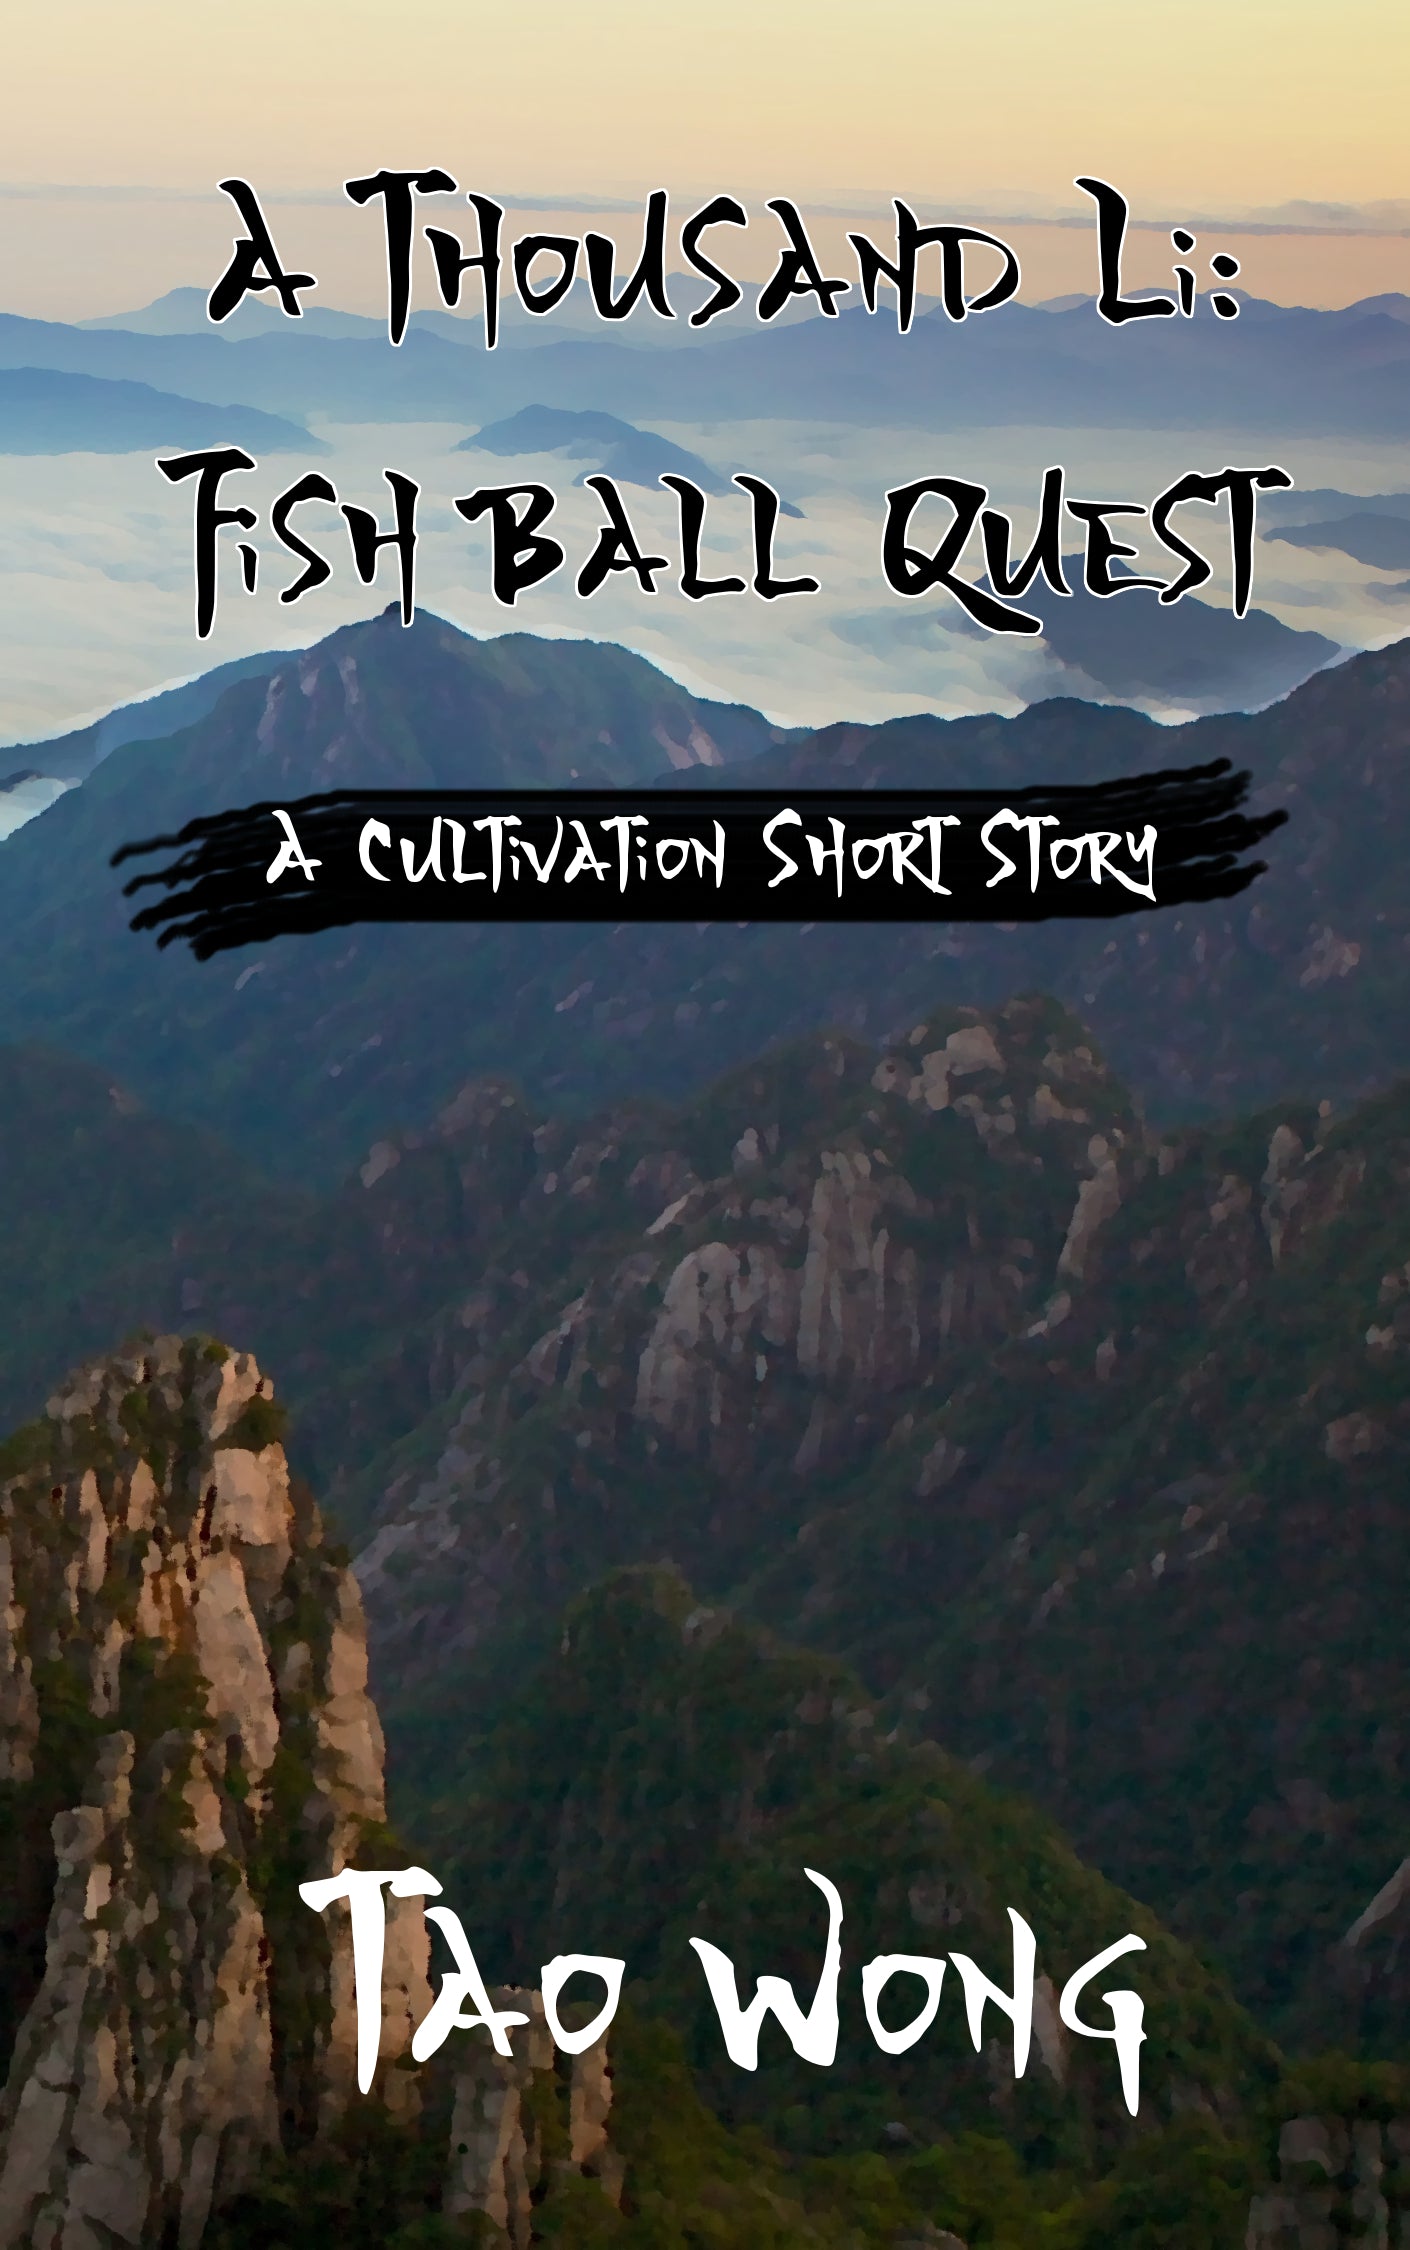 Fish Ball Quest (An A Thousand Li Short Story)